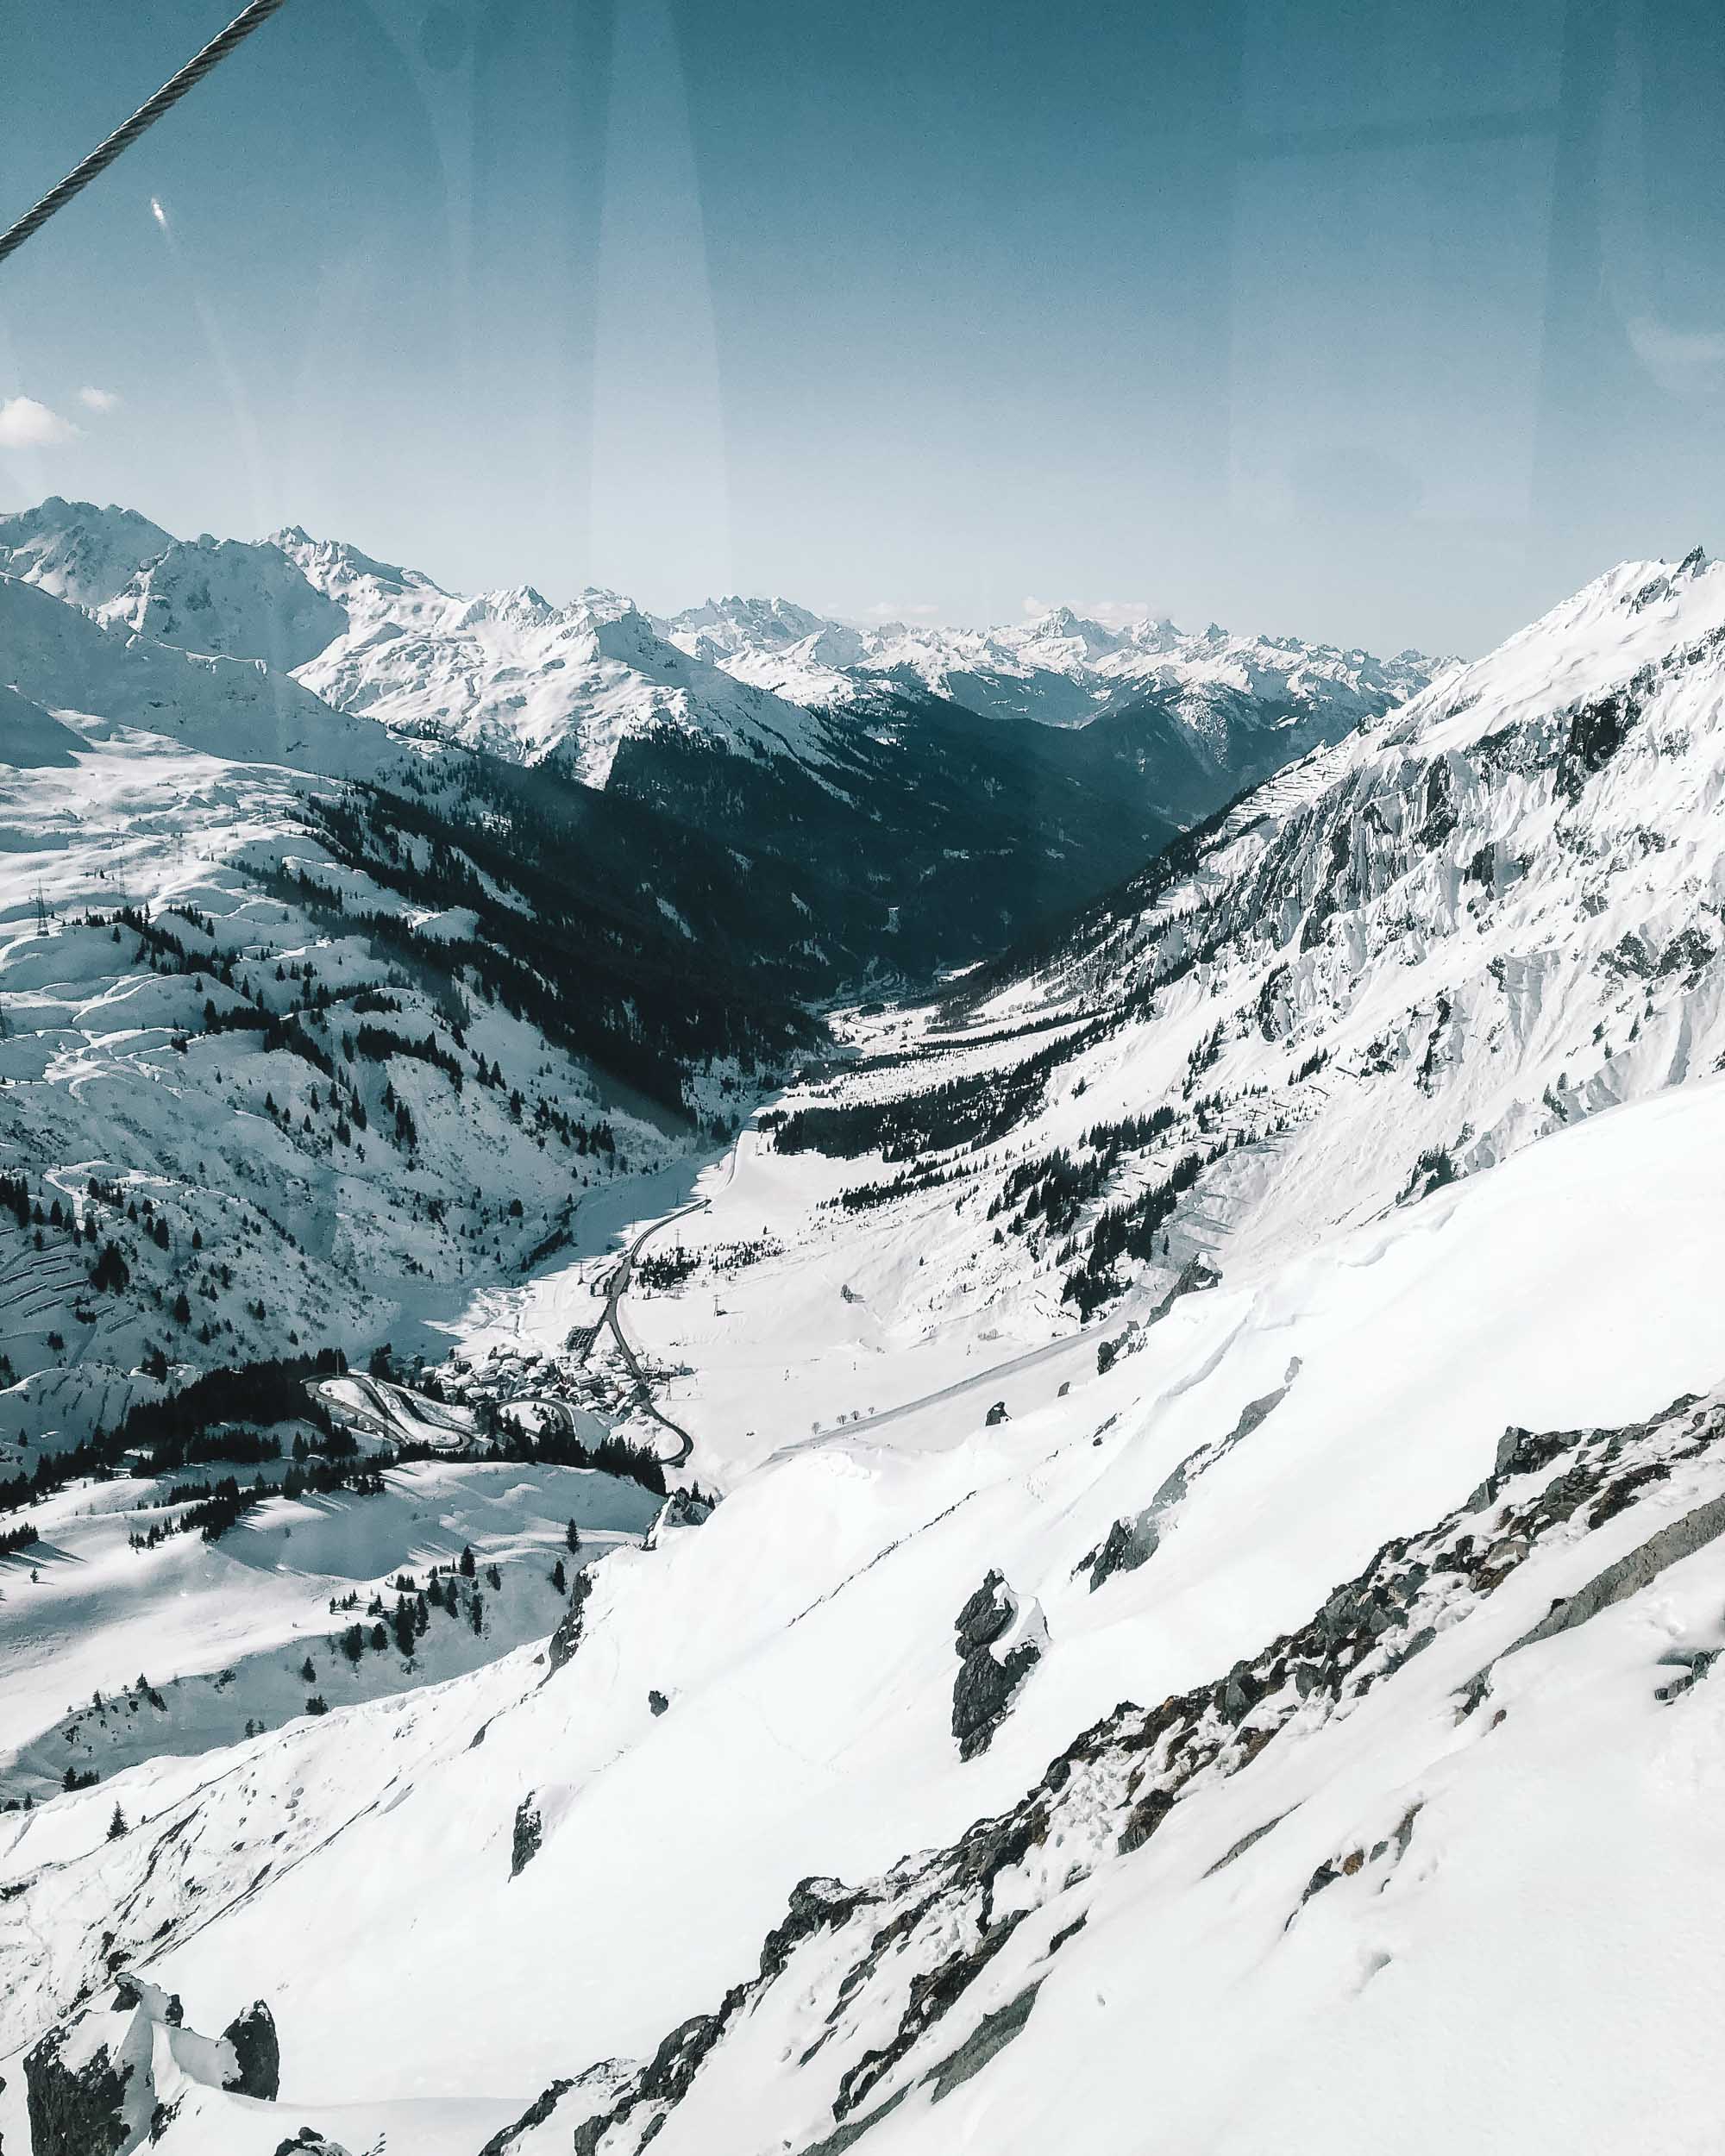 Ski slopes in Lech Austria in Europe